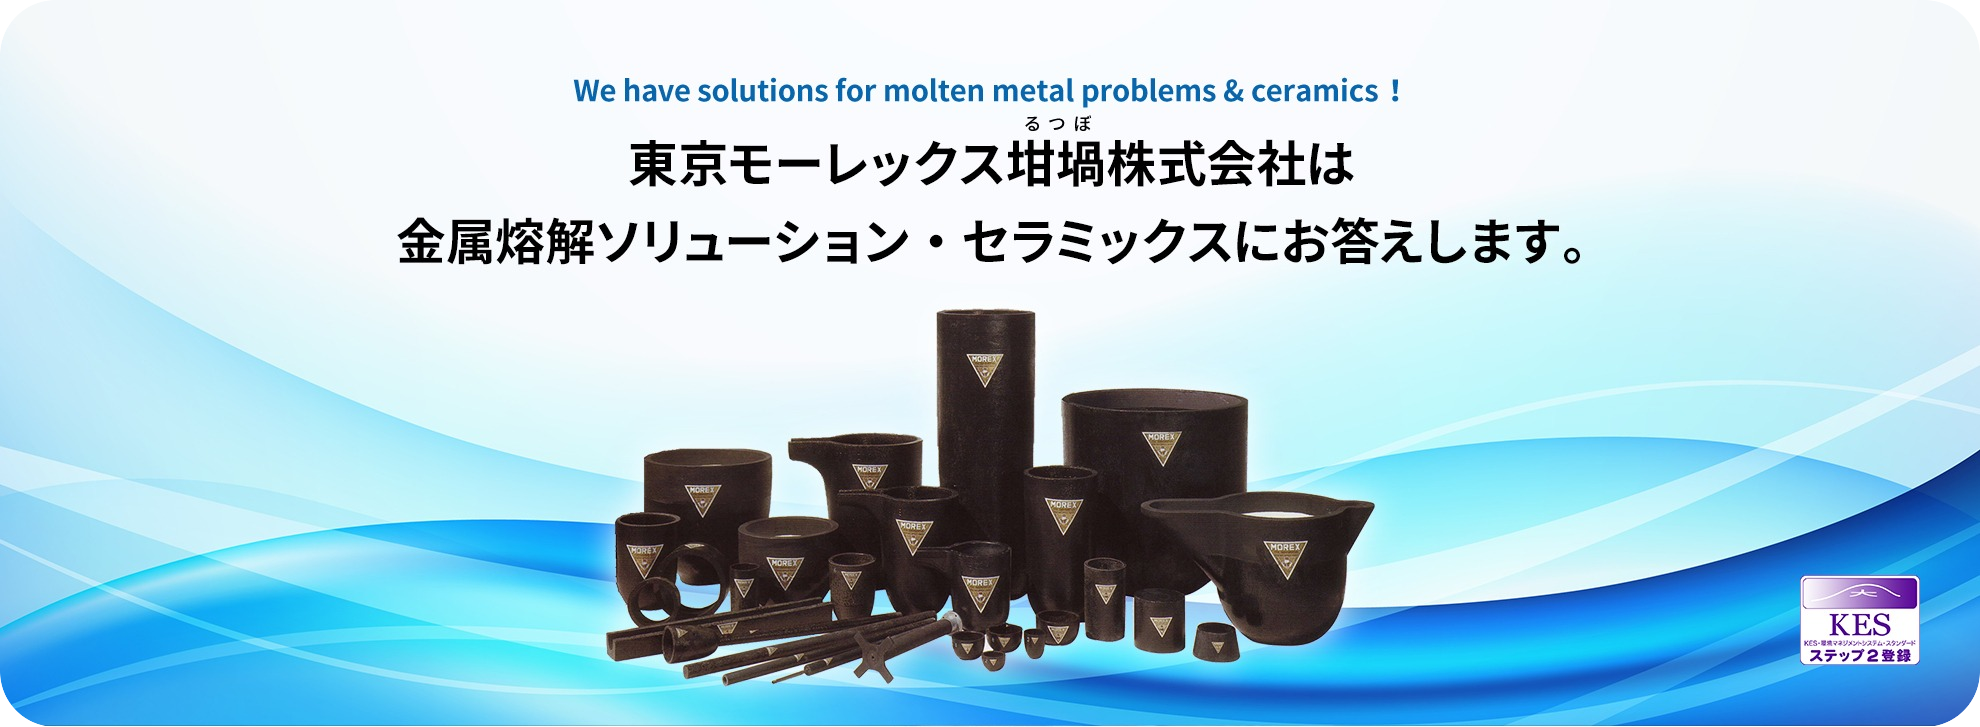 東京モーレックス坩堝株式会社は金属熔解ソリューション・セラミックスにお答えします。